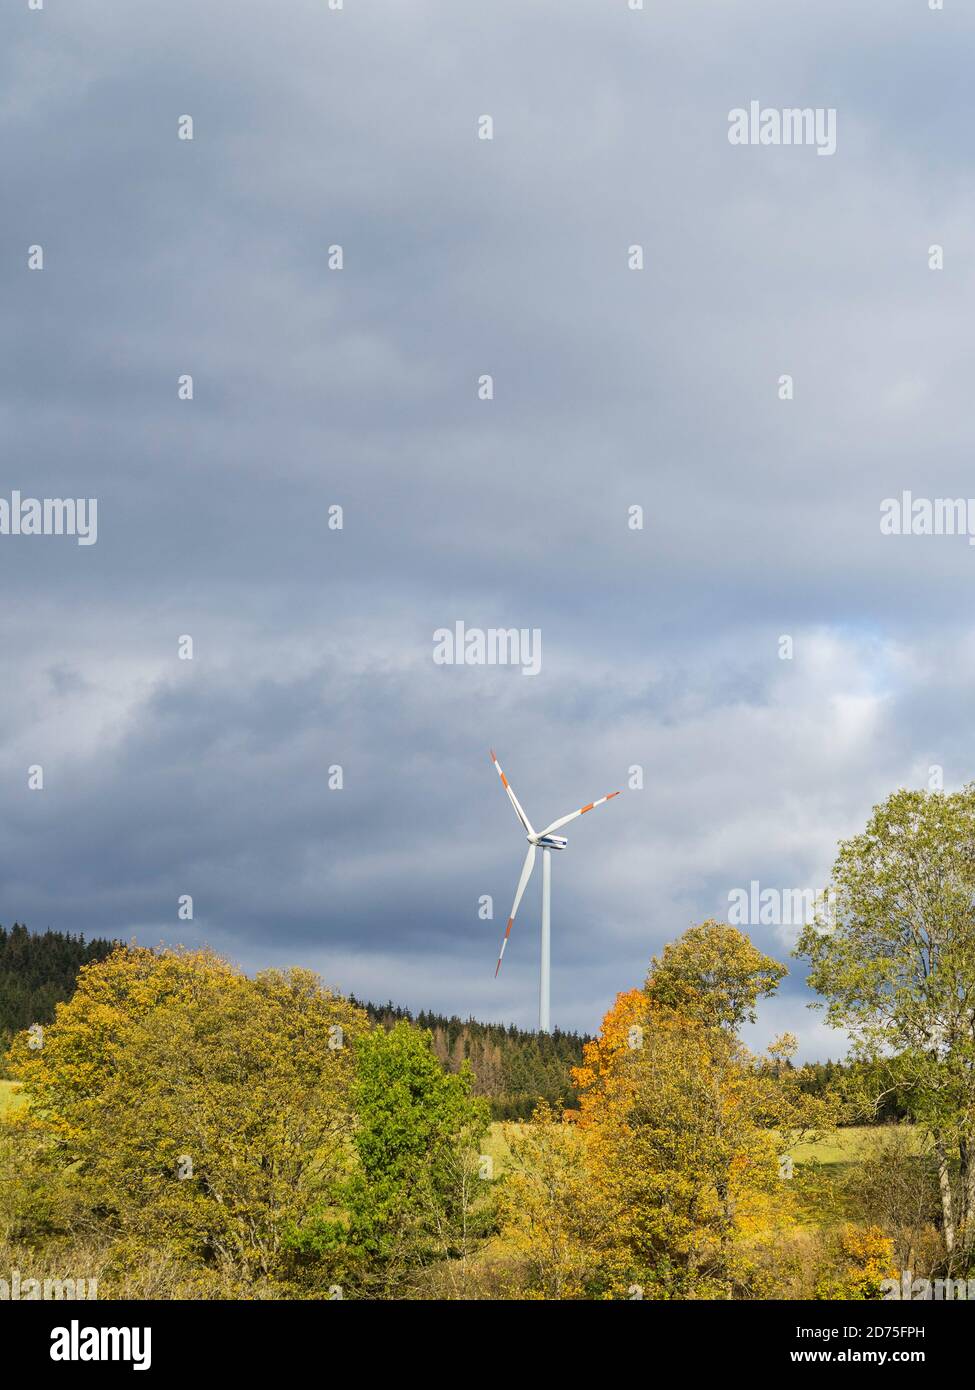 Eine einzige Windmühle hinter einigen Herbstbäumen, die unter einem wolkigen Himmel sonnenbeschallt sind. Weidenhausen, NRW, Deutschland. Stockfoto